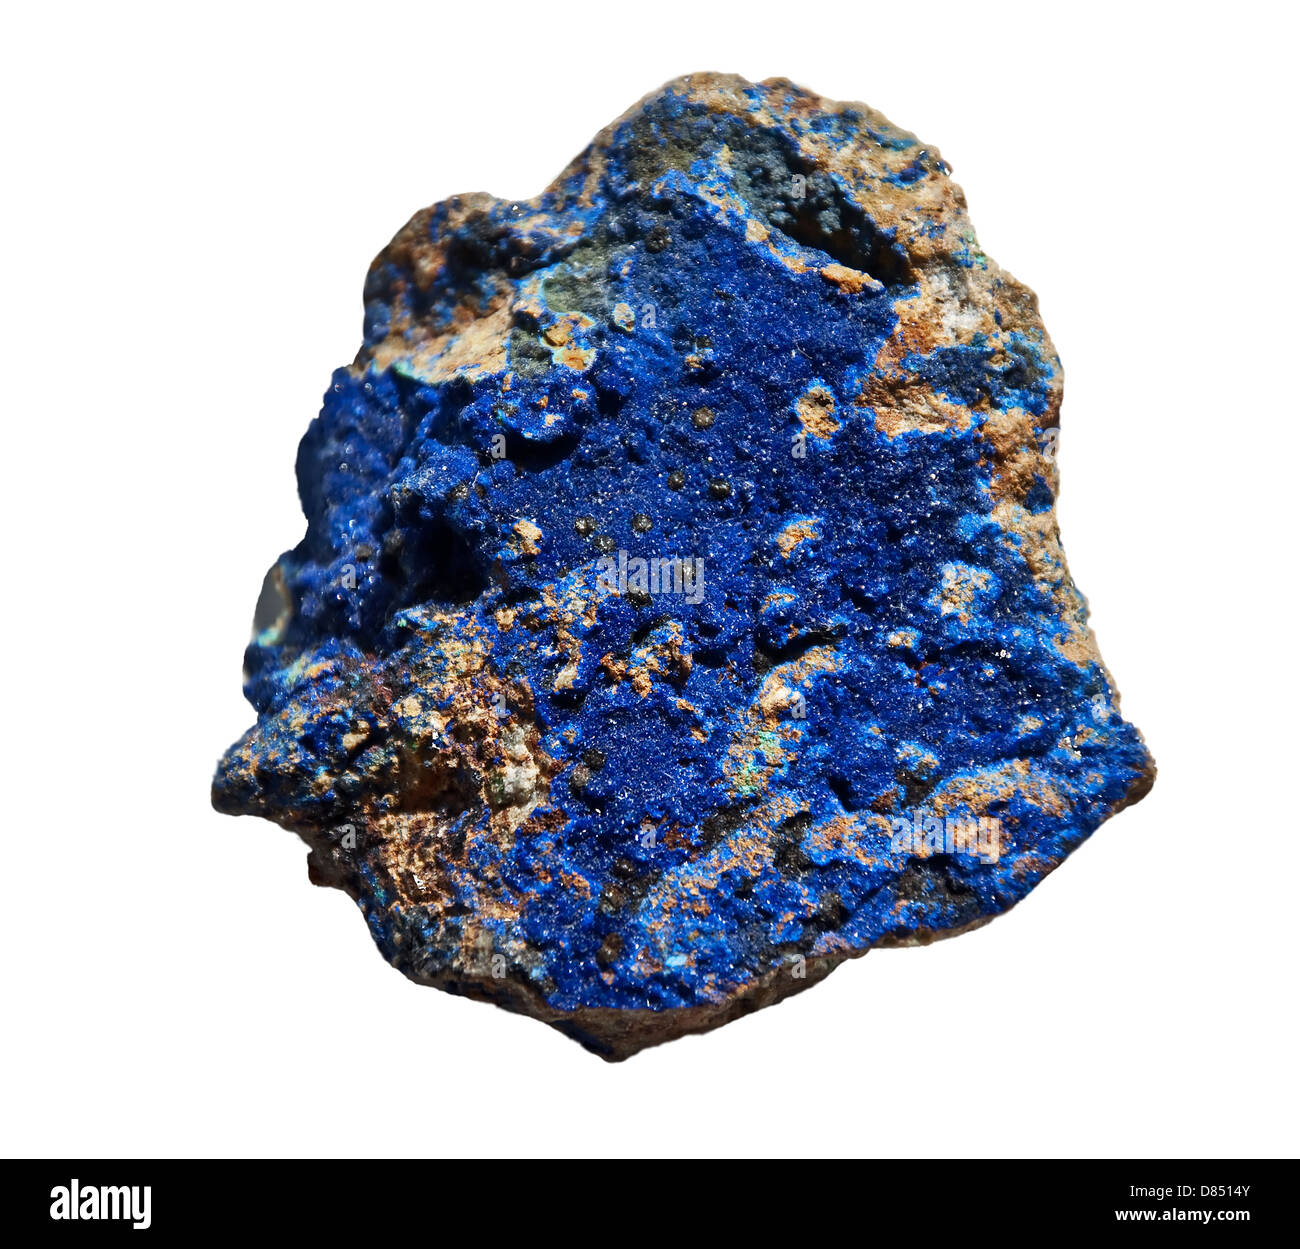 Dies ist Azurit, kobaltblaue Farbe Stein, das ist ein Mineral weiche Kupfer-Carbonat, isoliert auf einem weißen Hintergrund. Stockfoto